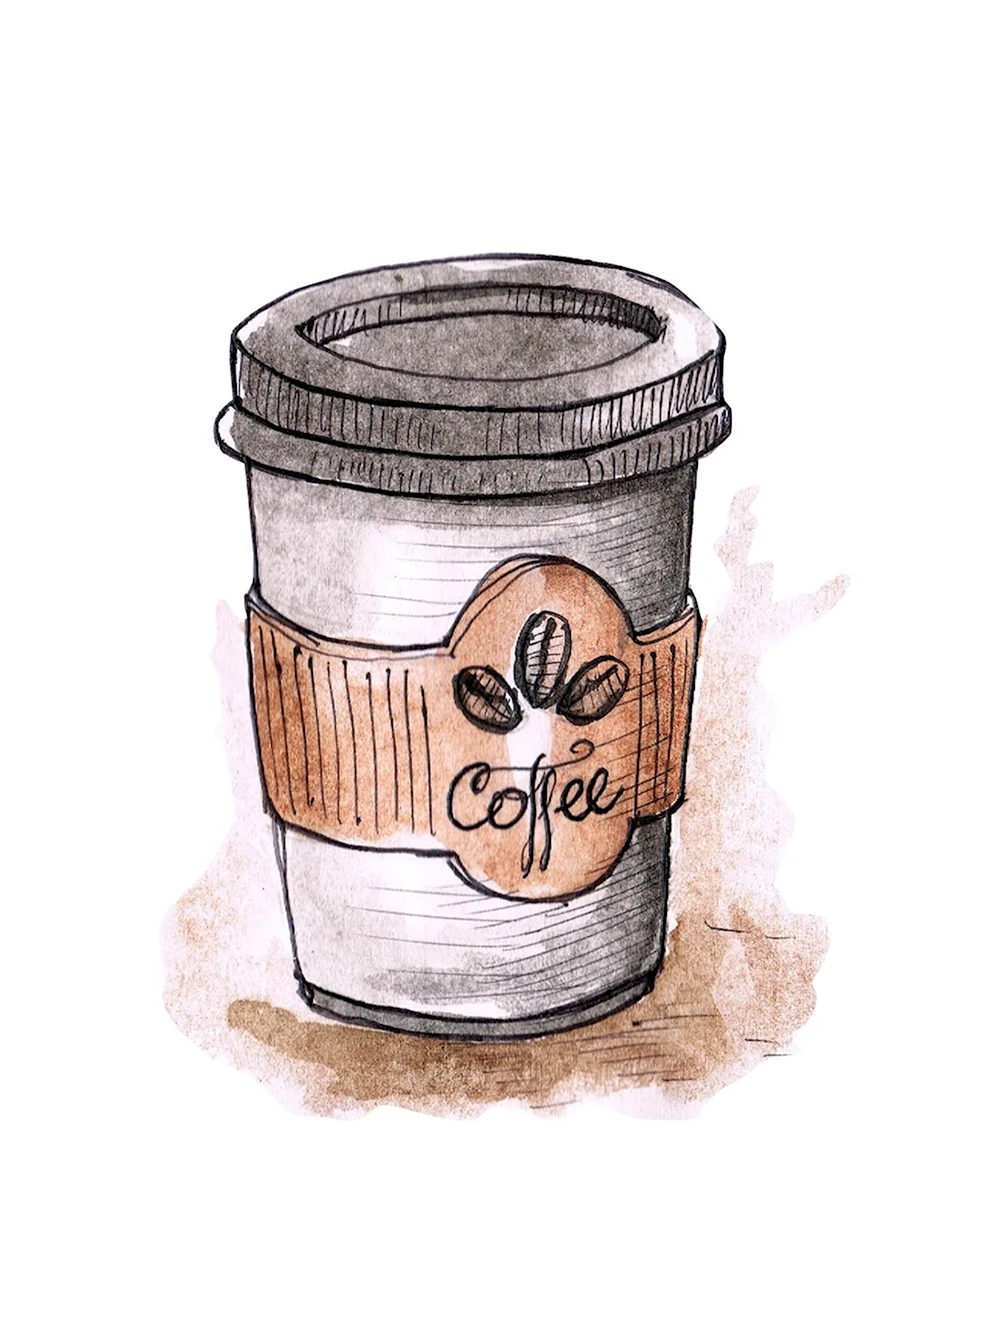 Нарисованный стаканчик кофе